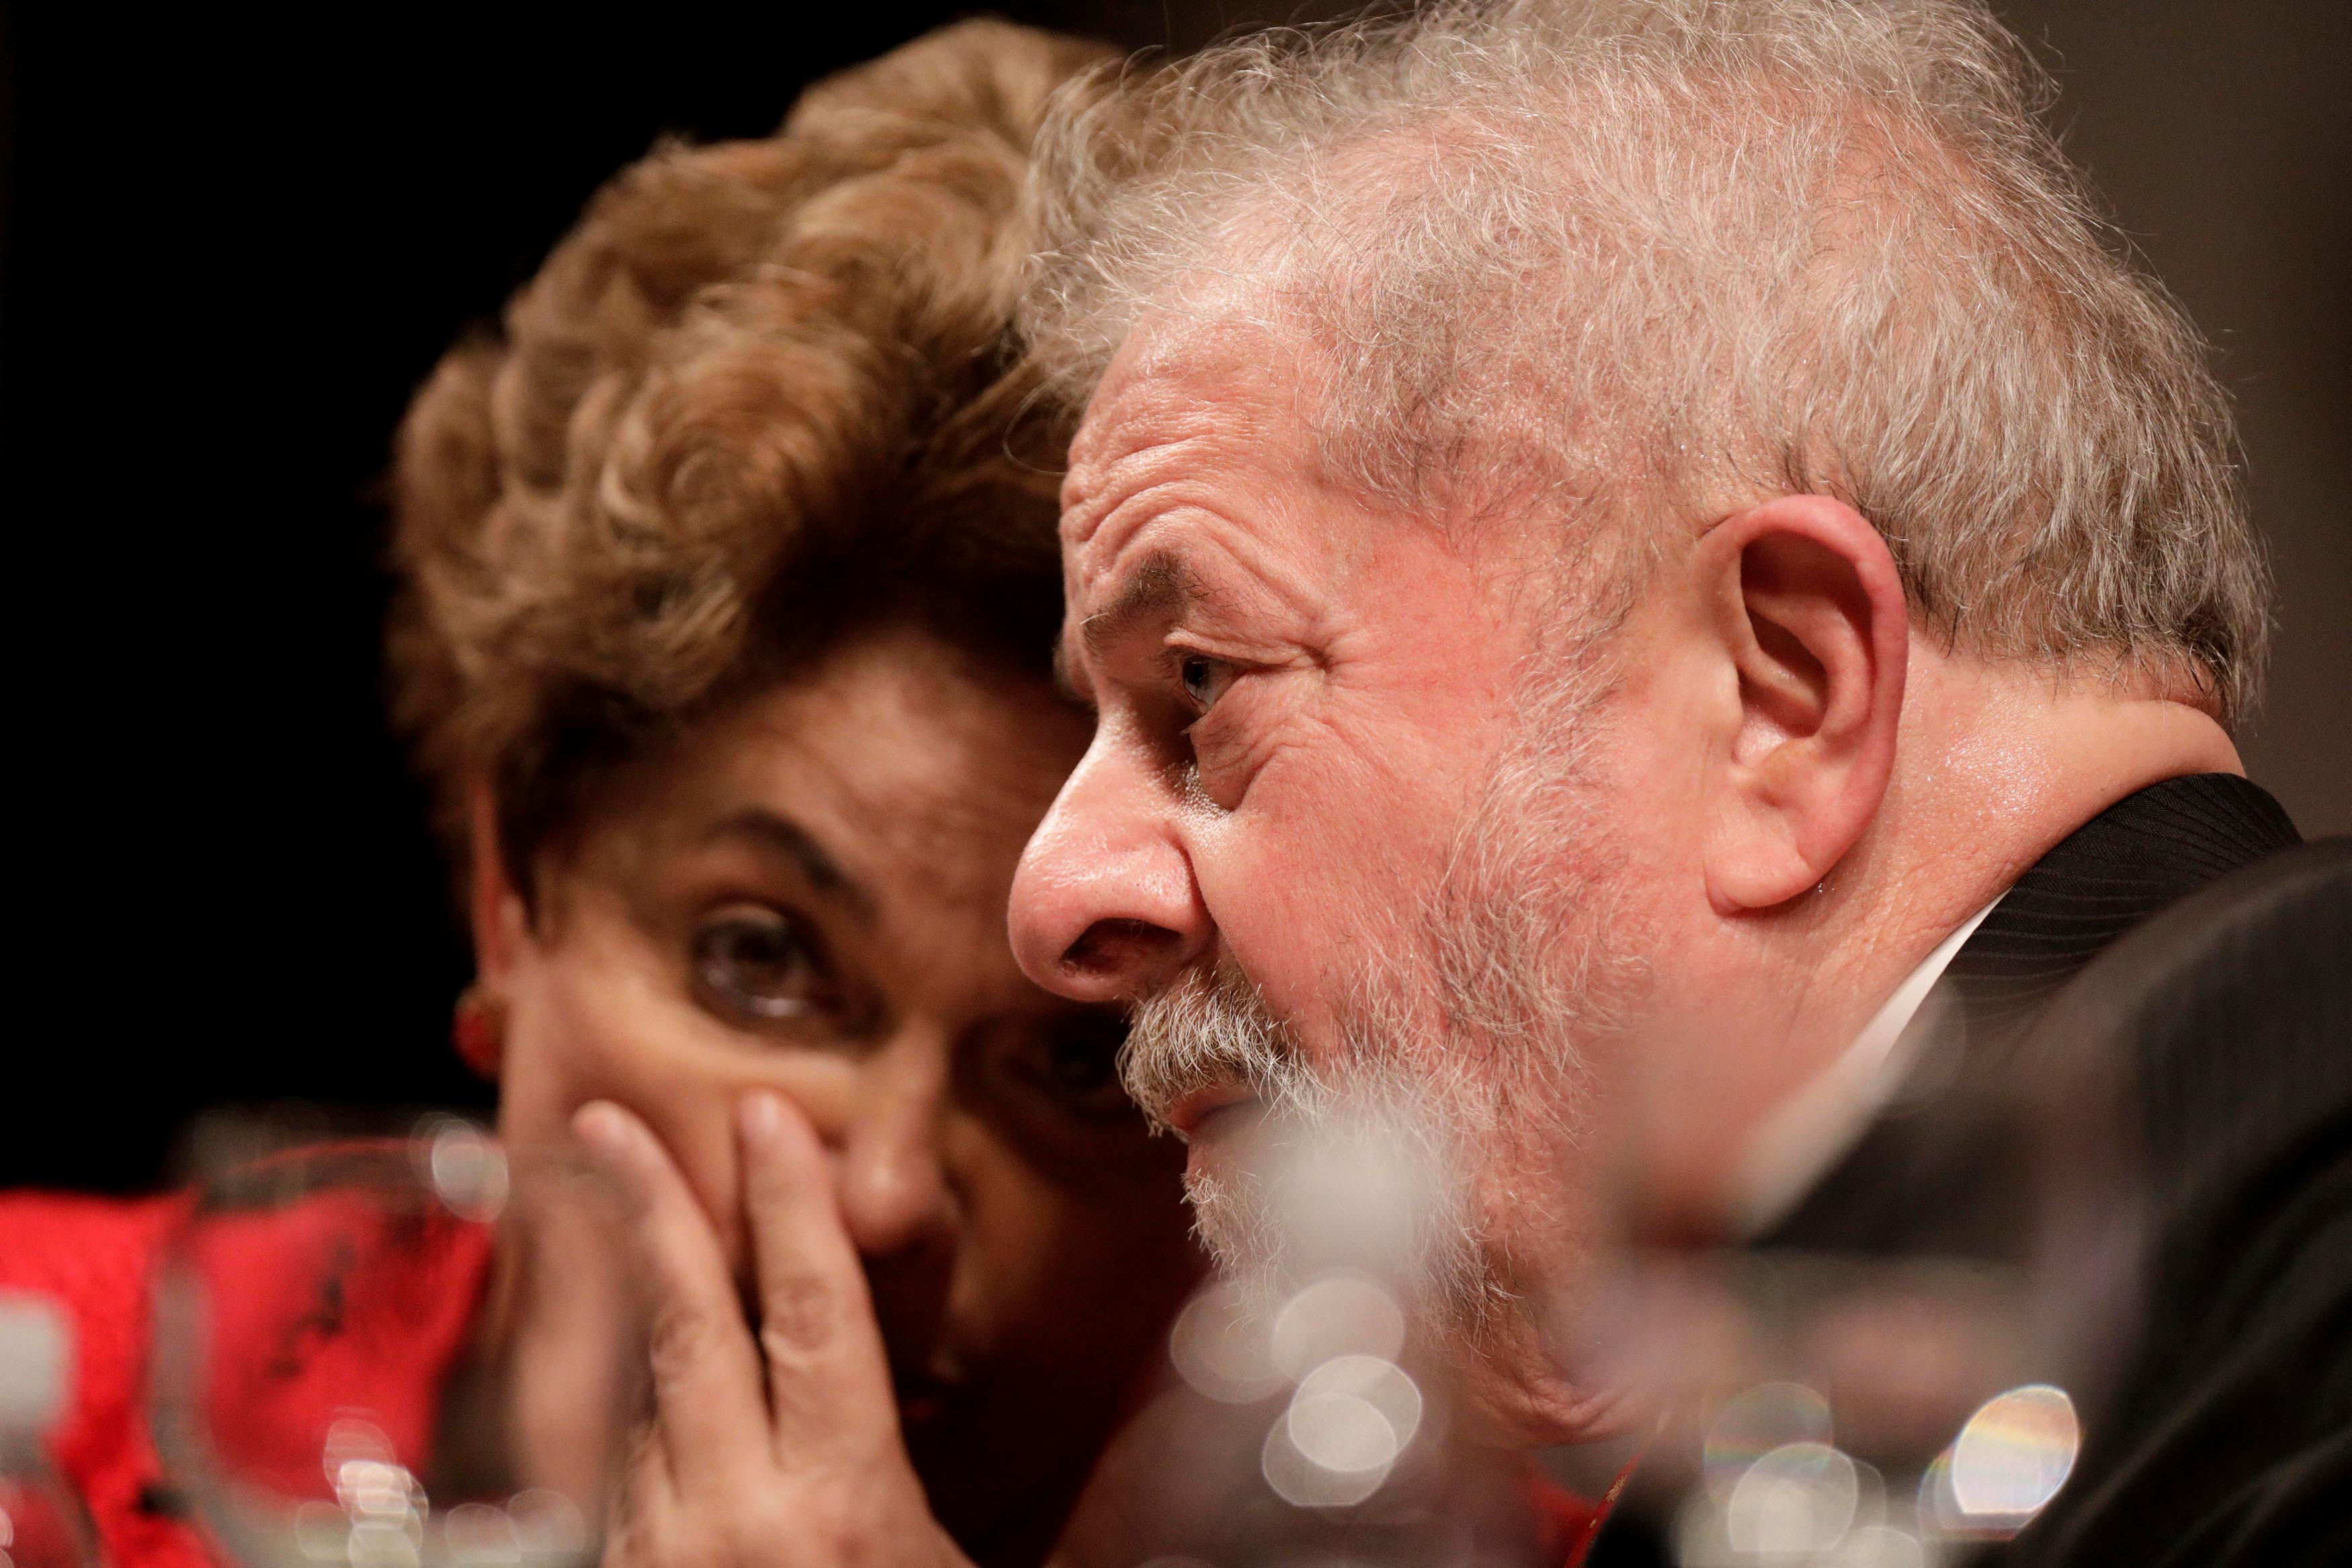 El expresidente brasileño Lula Da Silva, condenado a 9 años y medio de prisión 1